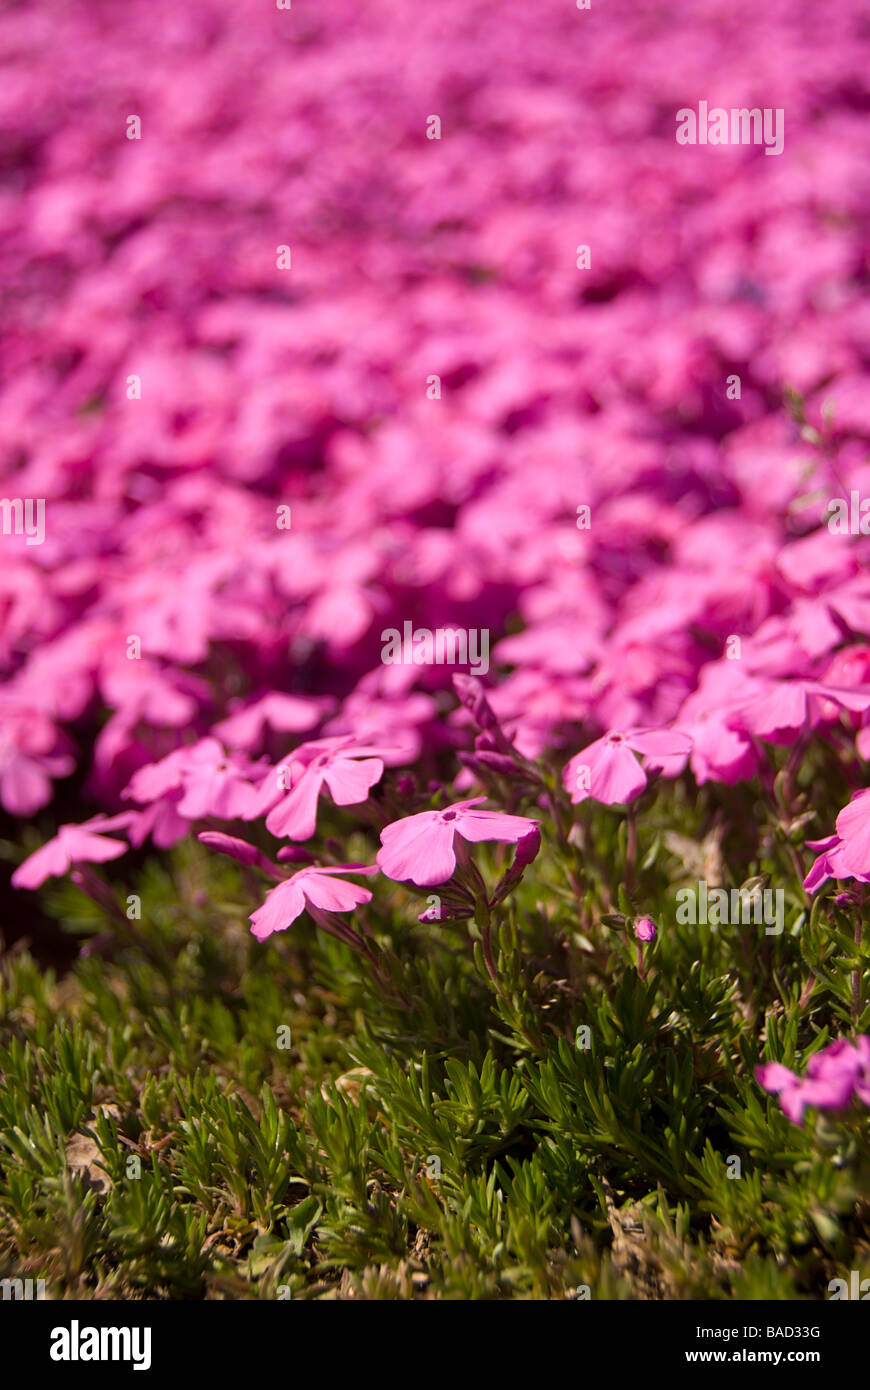 Una massa piantagione di rosa luminoso moss phlox Phlox subulata che fiorisce in aprile in Giappone della regione di Kanto Foto Stock